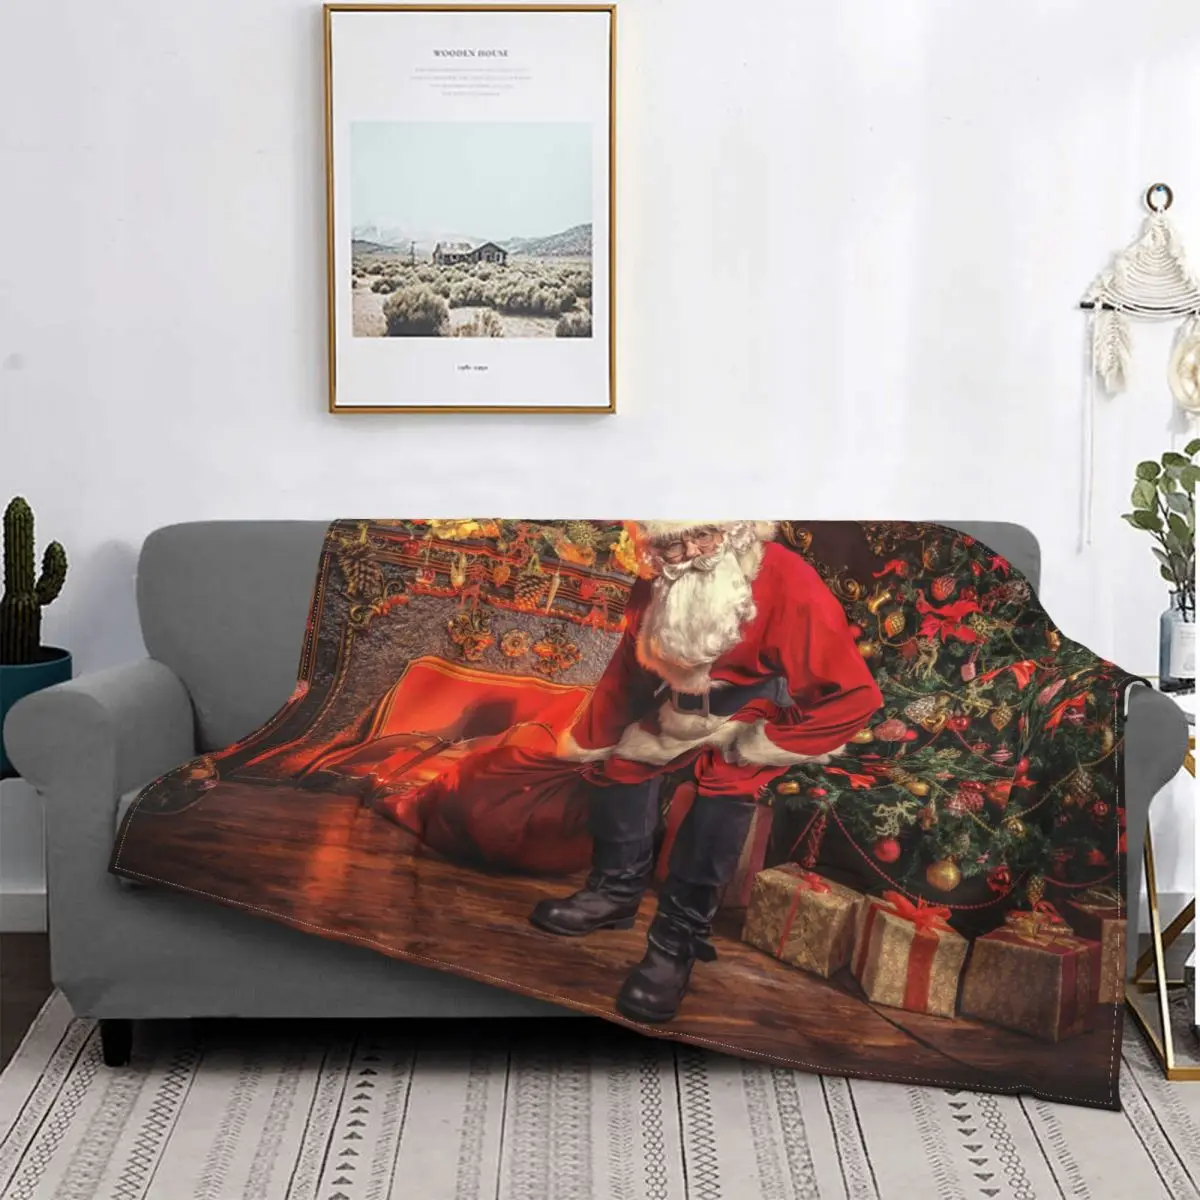 Купить: Одеяло в виде Санта-Клауса, рождественской елки, чехол вскандинавском стиле, Рождество, Новый Год, шерстяное покрывало, диван дляспальни по цене 7.74 руб. , со скидкой 7.73 рублей